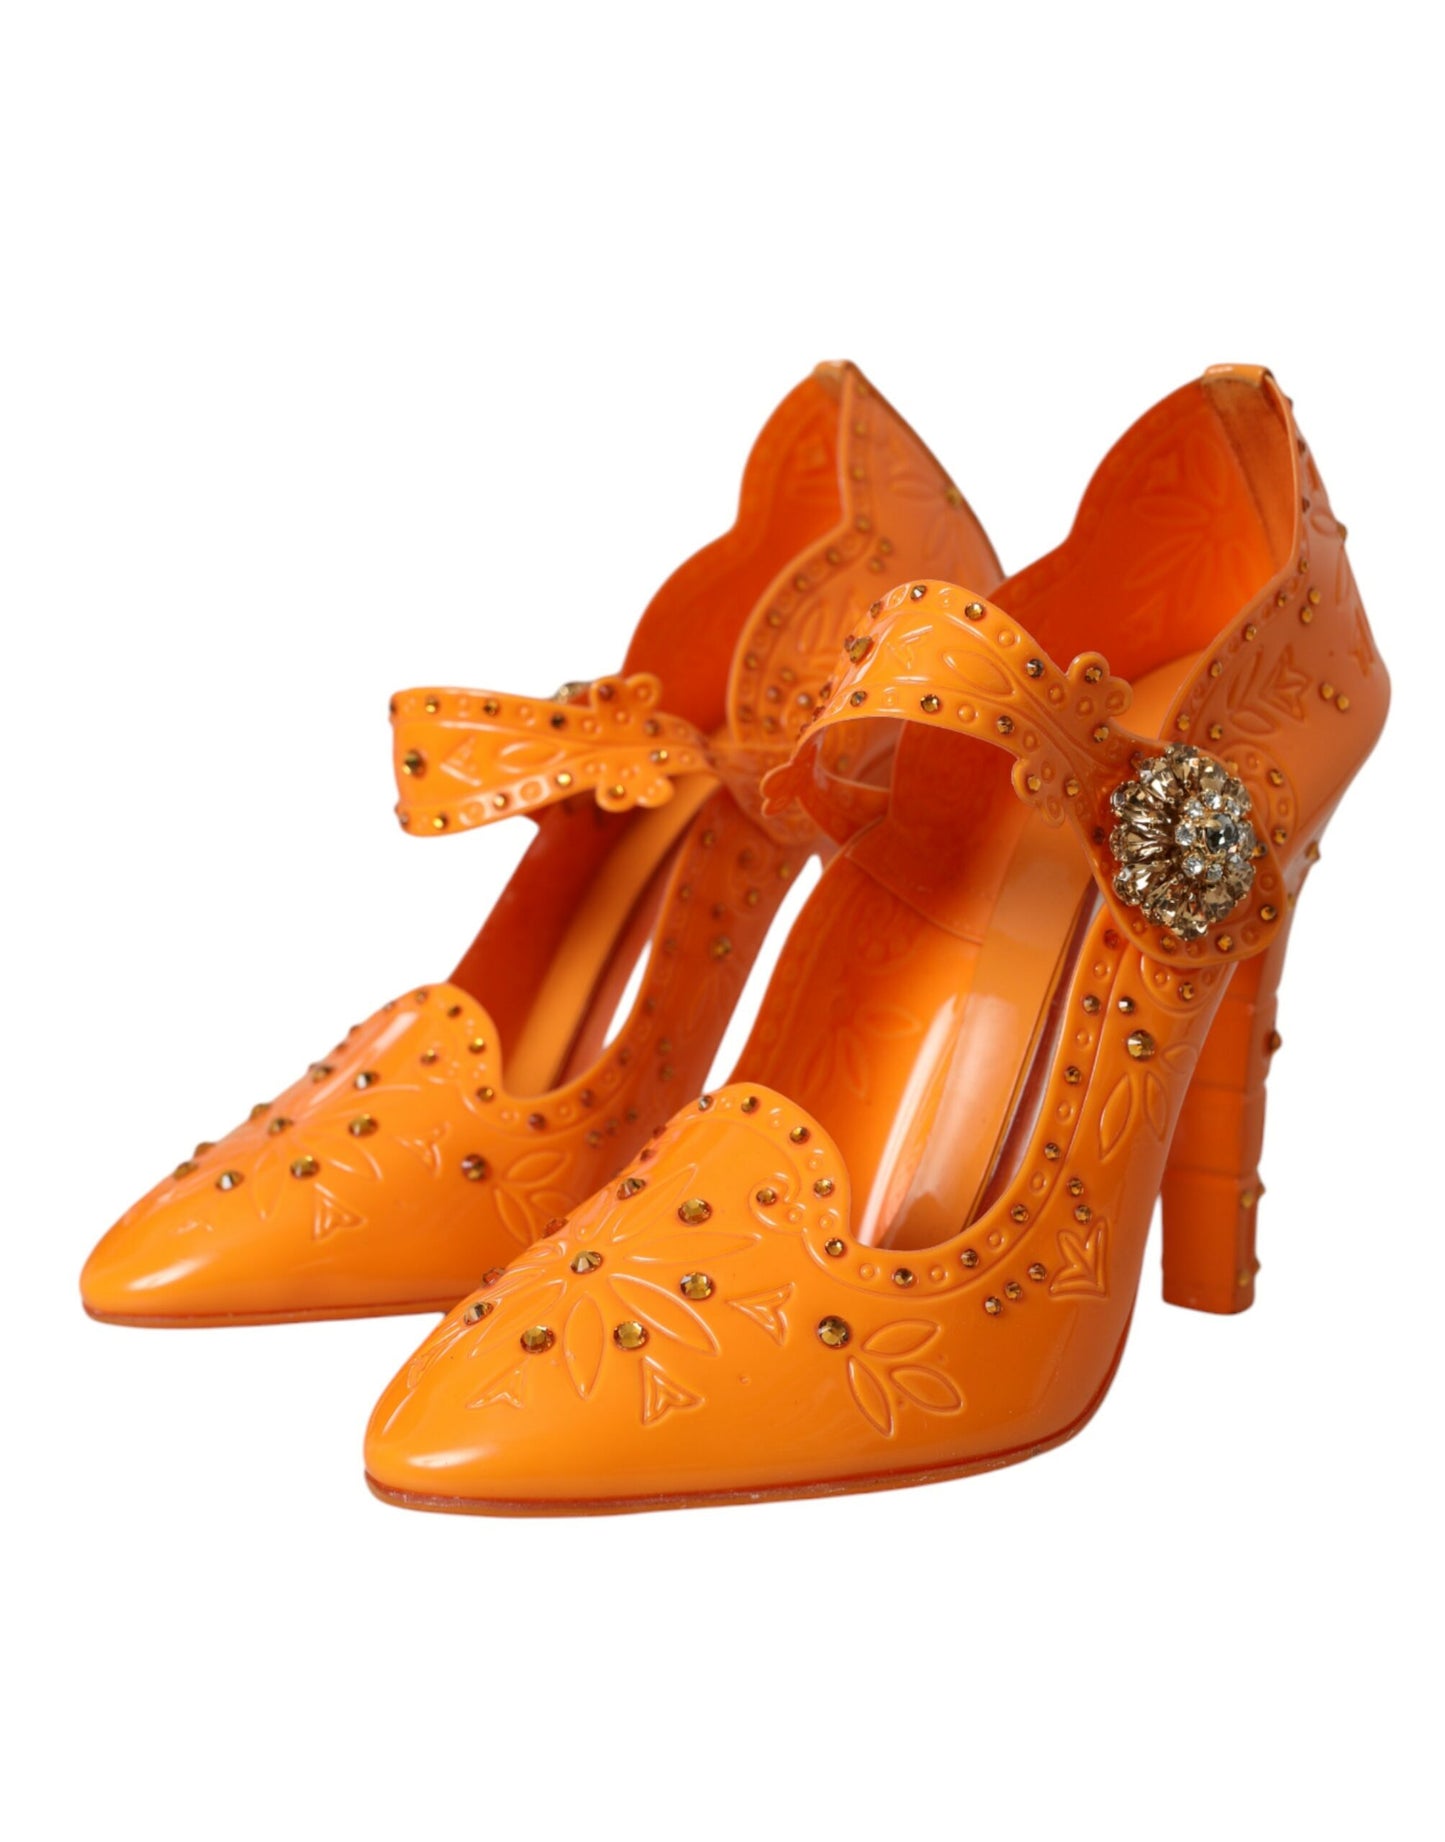 Dolce & Gabbana Orange CINDERELLA Floral Crystal Pumps Shoes